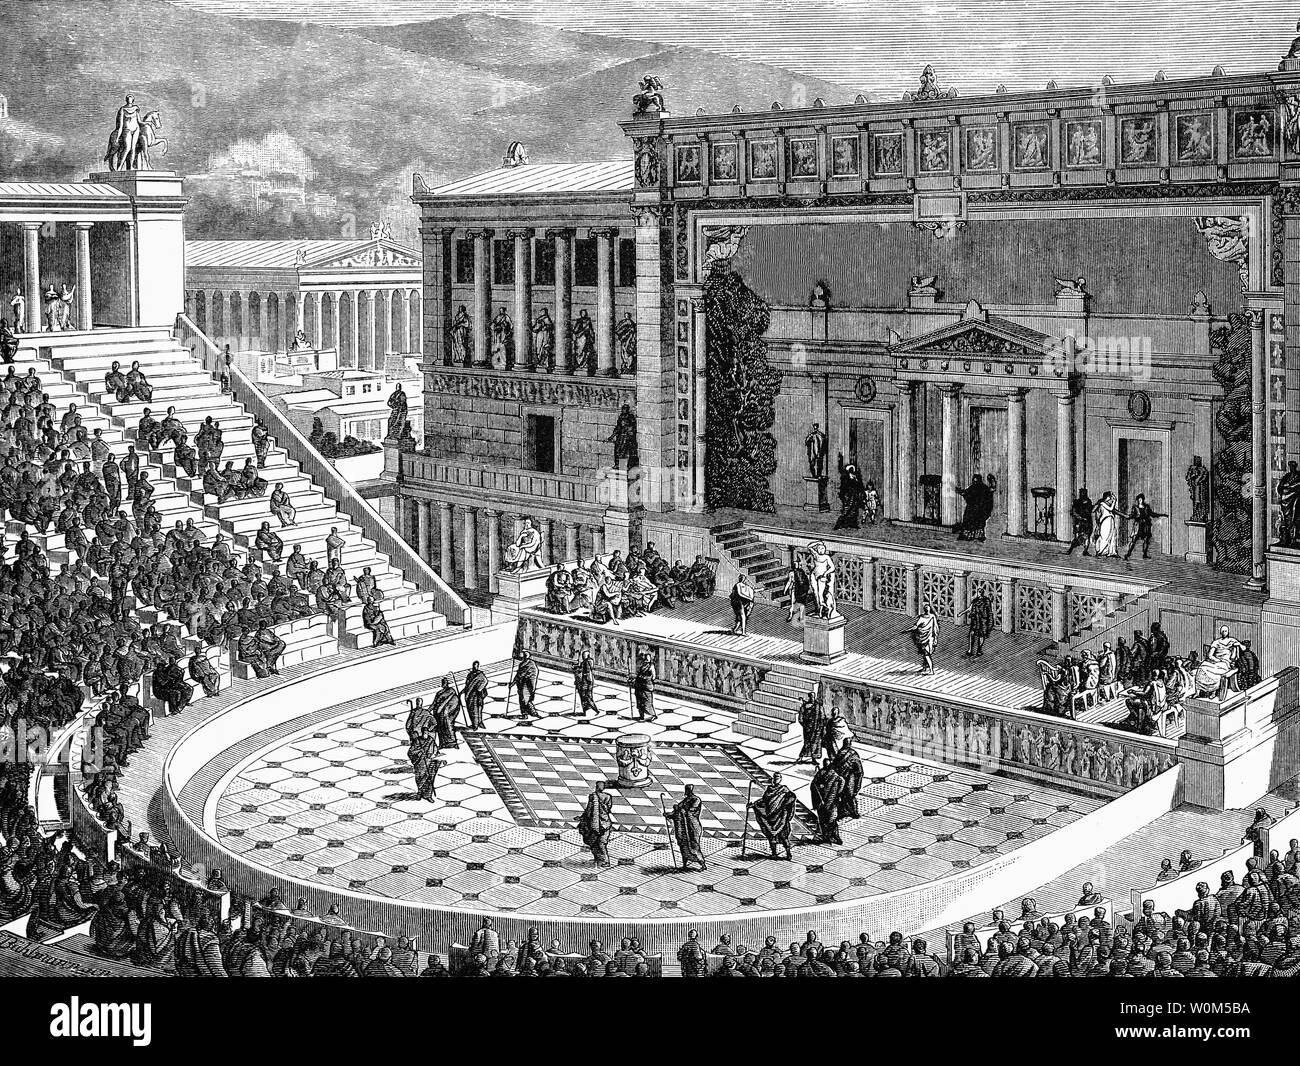 Il Teatro di Dioniso Eleuthereus è un grande teatro in Atene, considerato per essere il primo al mondo del teatro, costruito ai piedi dell'acropoli ateniese. Dedicato a Dioniso, dio di riproduzioni e vino (tra le altre cose), il teatro poteva ospitare numerosi come 17.000 persone con eccellente acustica, che lo rende un luogo ideale per Atene antica' più grande celebrazione teatrale, il Dionysia. È stato il primo teatro mai costruito, tagliate nel sud della scogliera dell'Acropoli, e presumibilmente il luogo di nascita della tragedia greca e di un sito che è stato usato come un teatro a partire dal VI secolo A.C. Foto Stock